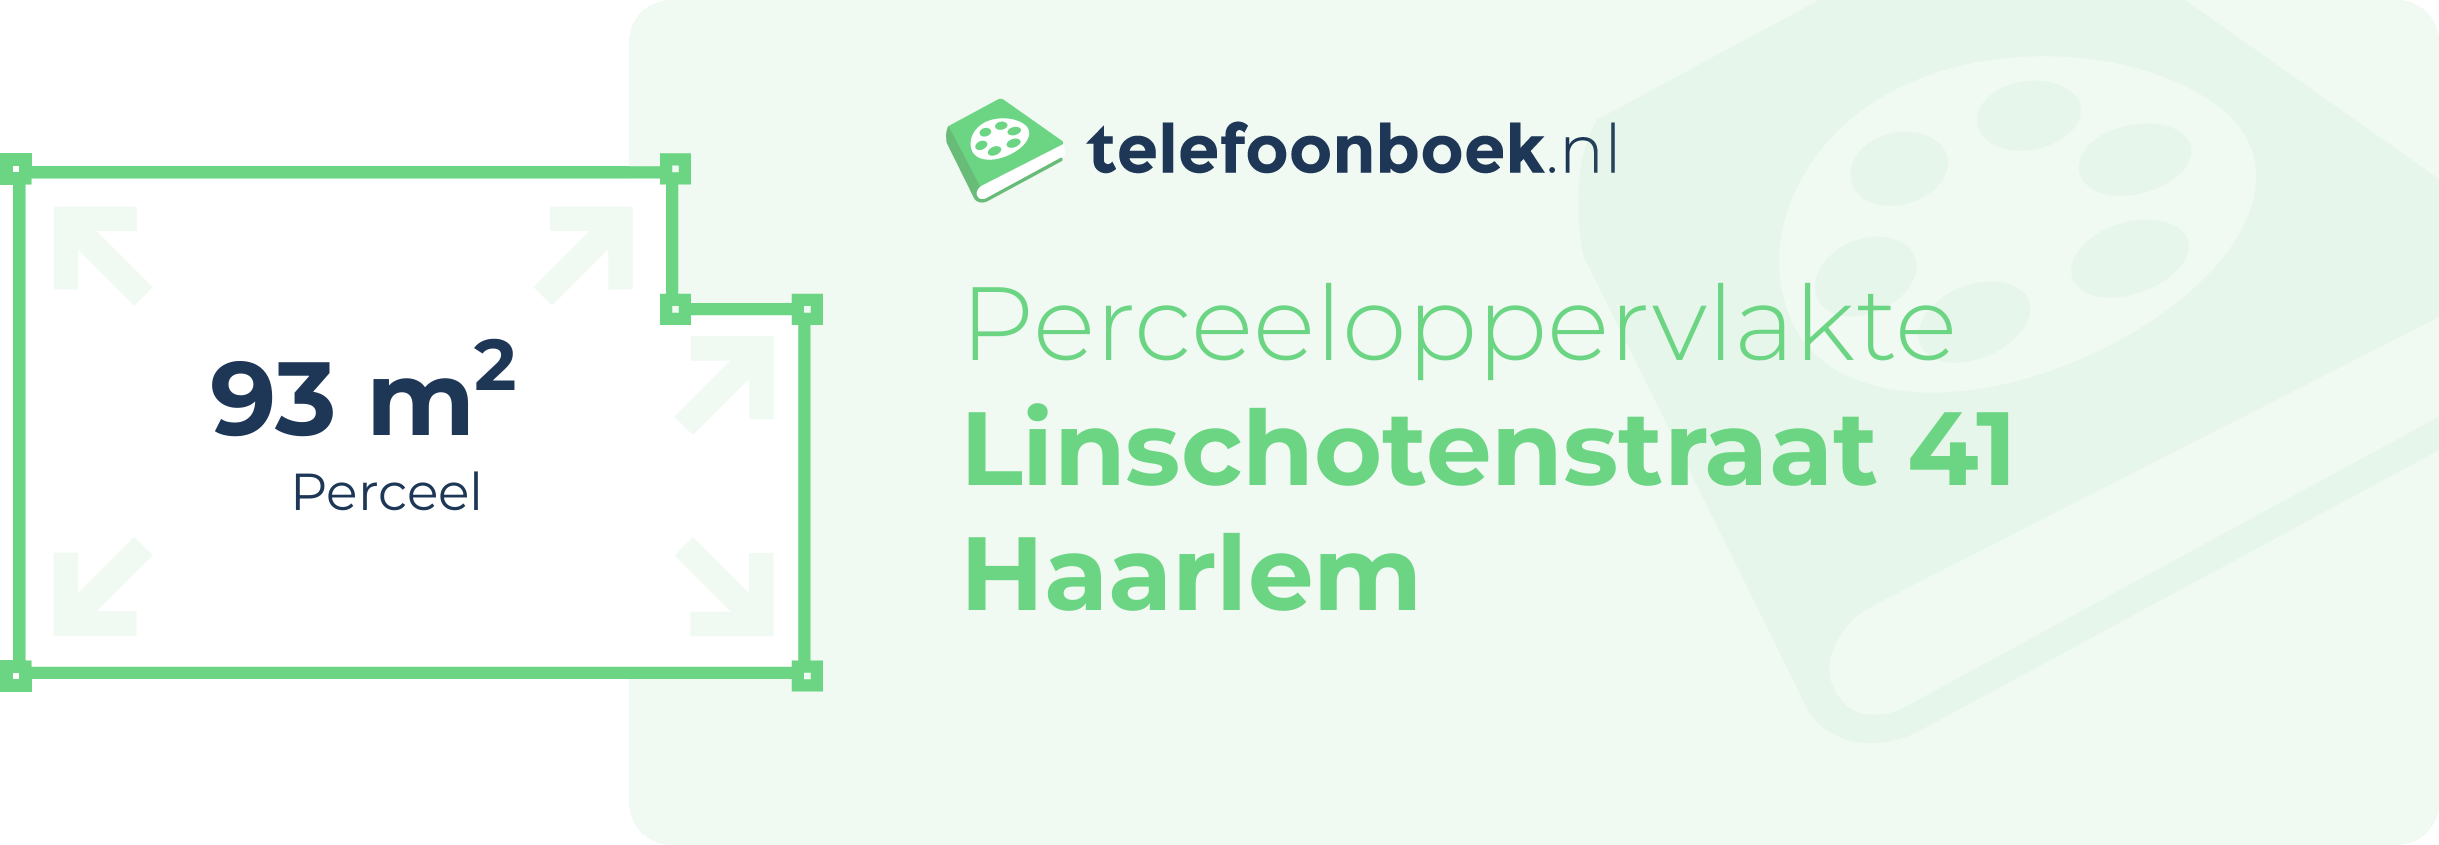 Perceeloppervlakte Linschotenstraat 41 Haarlem